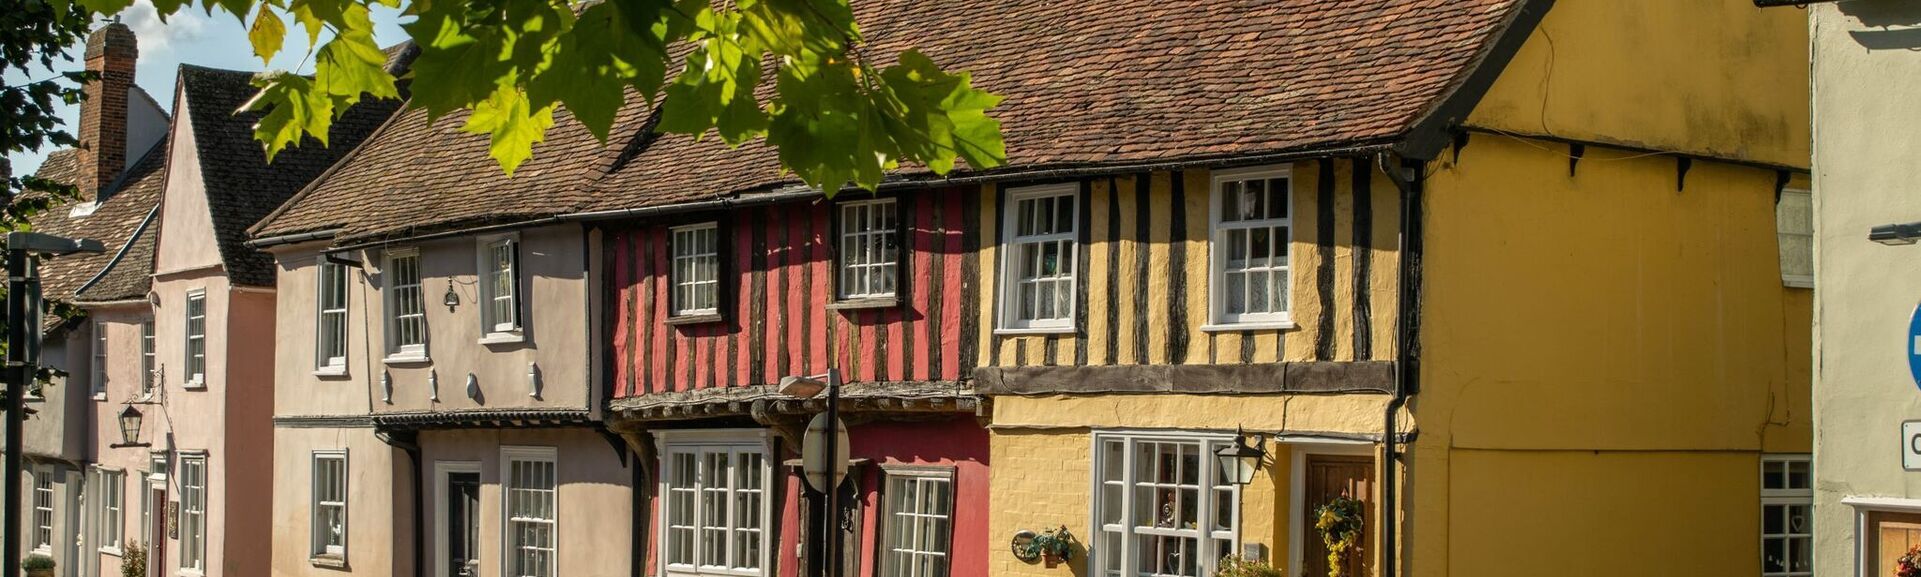  old colorful Tudor timber framed British cottages at Saffron Walden